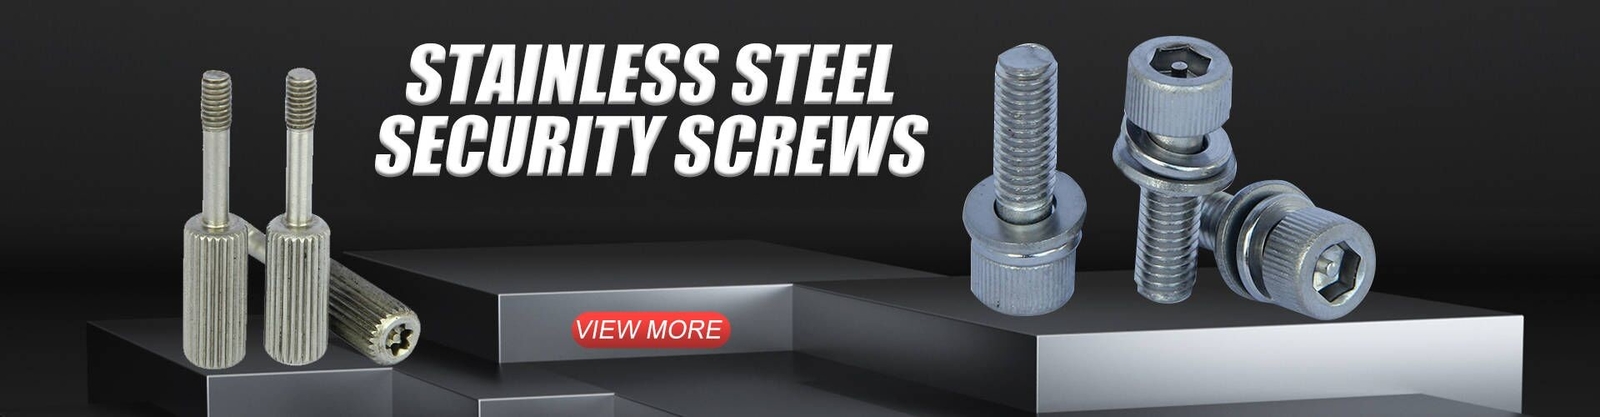 Stainless Steel Security Screws